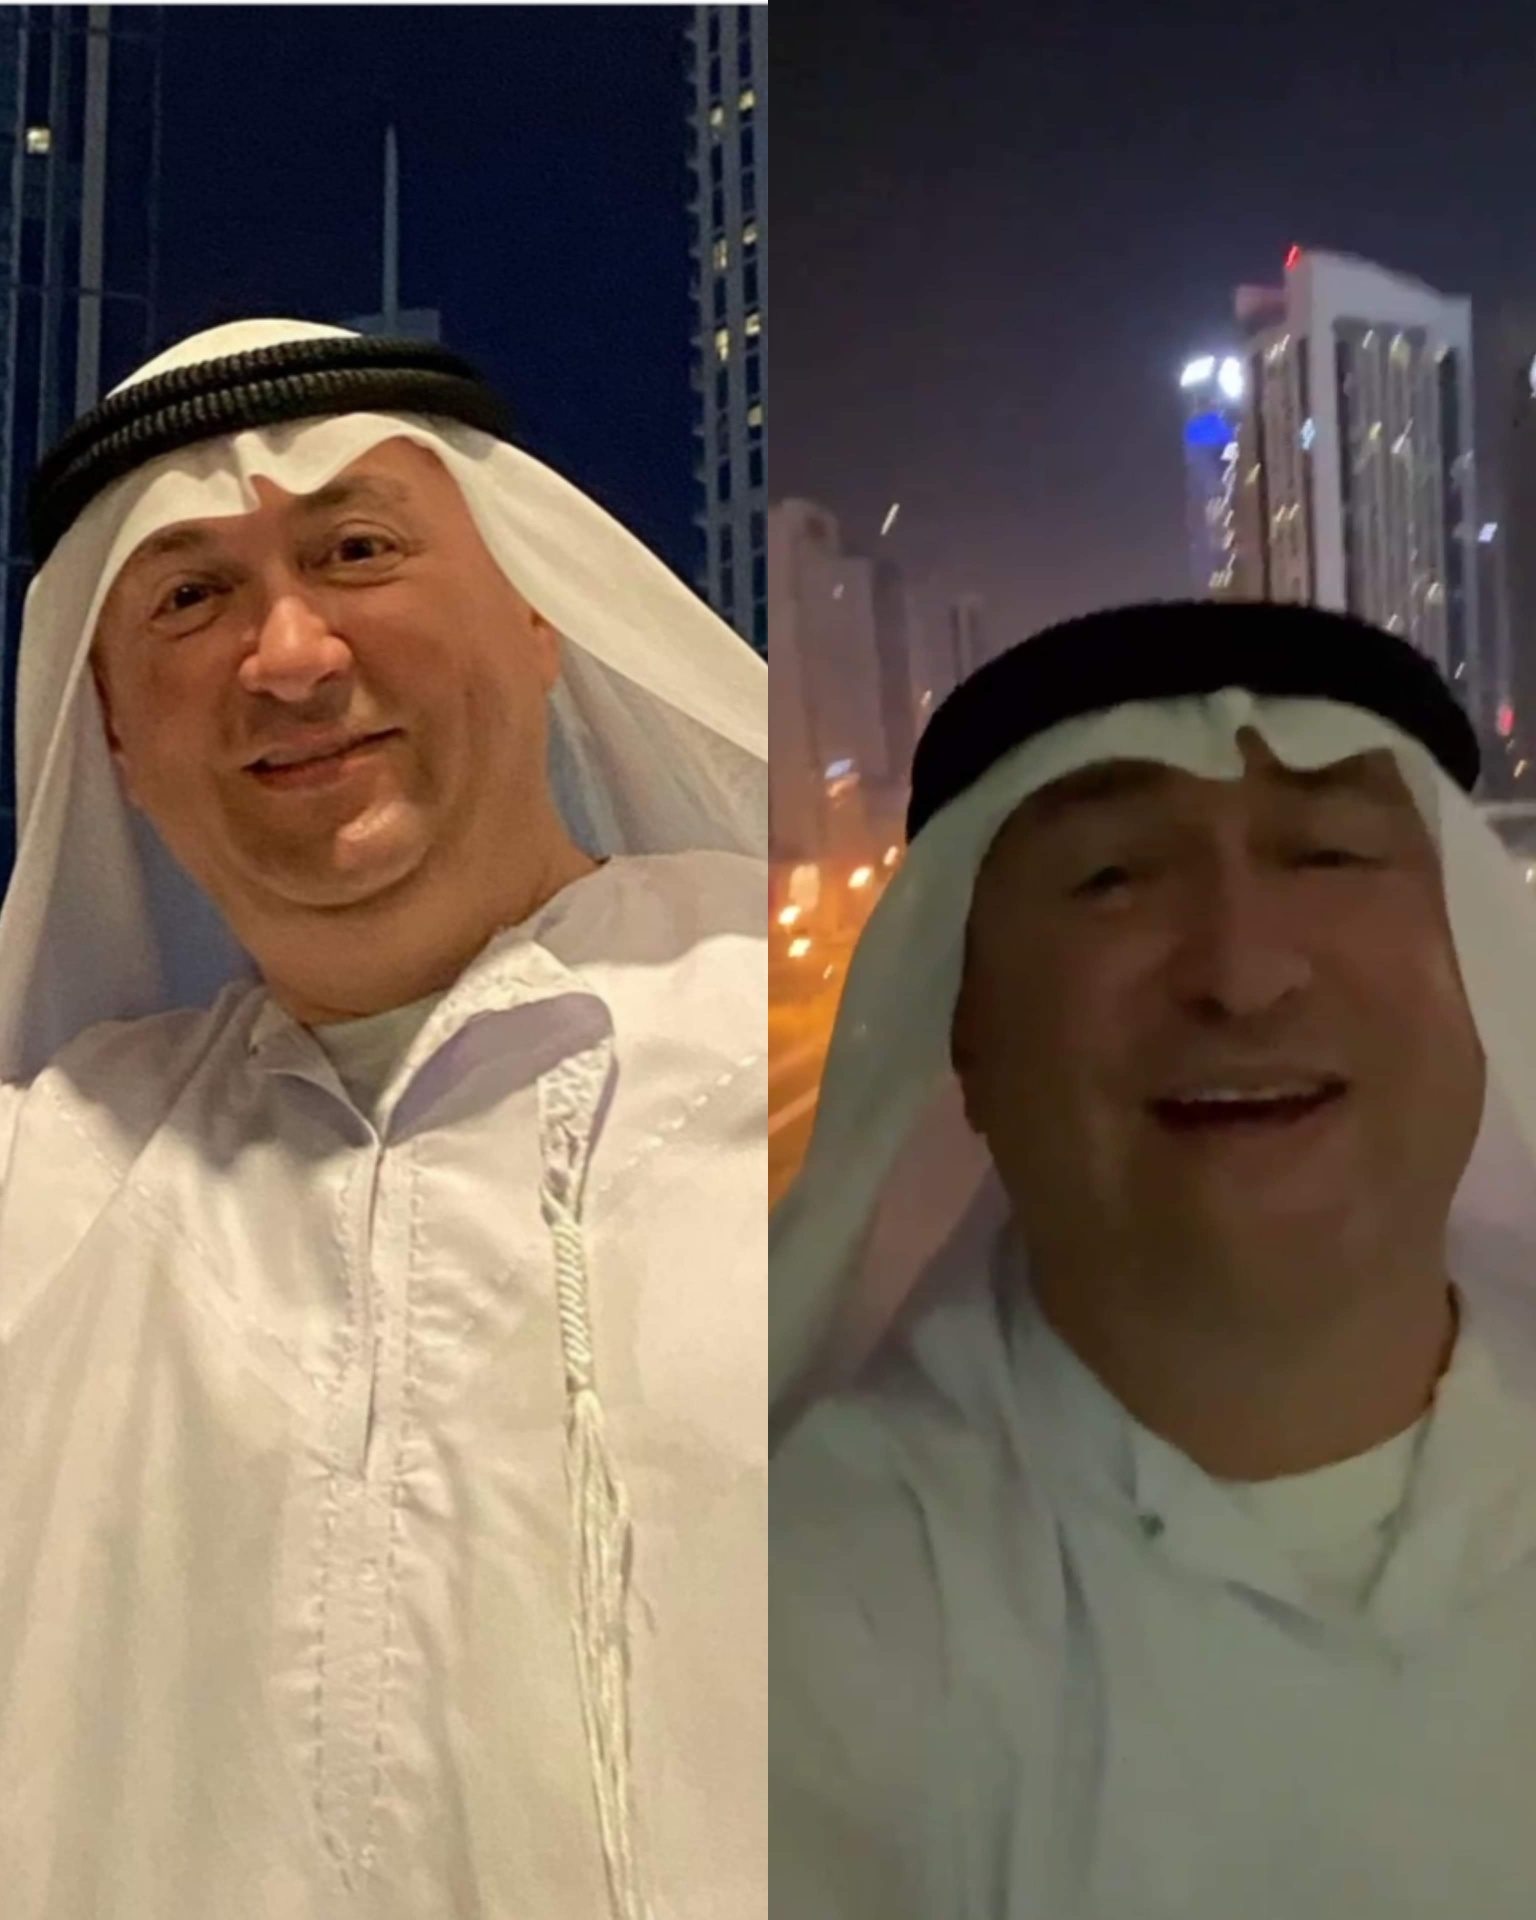 Đani se u Dubaiju obukao kao šeik, a zatim zapjevao na balkonu,osvojio je internet-Pogledajte kako je sve to izgledalo